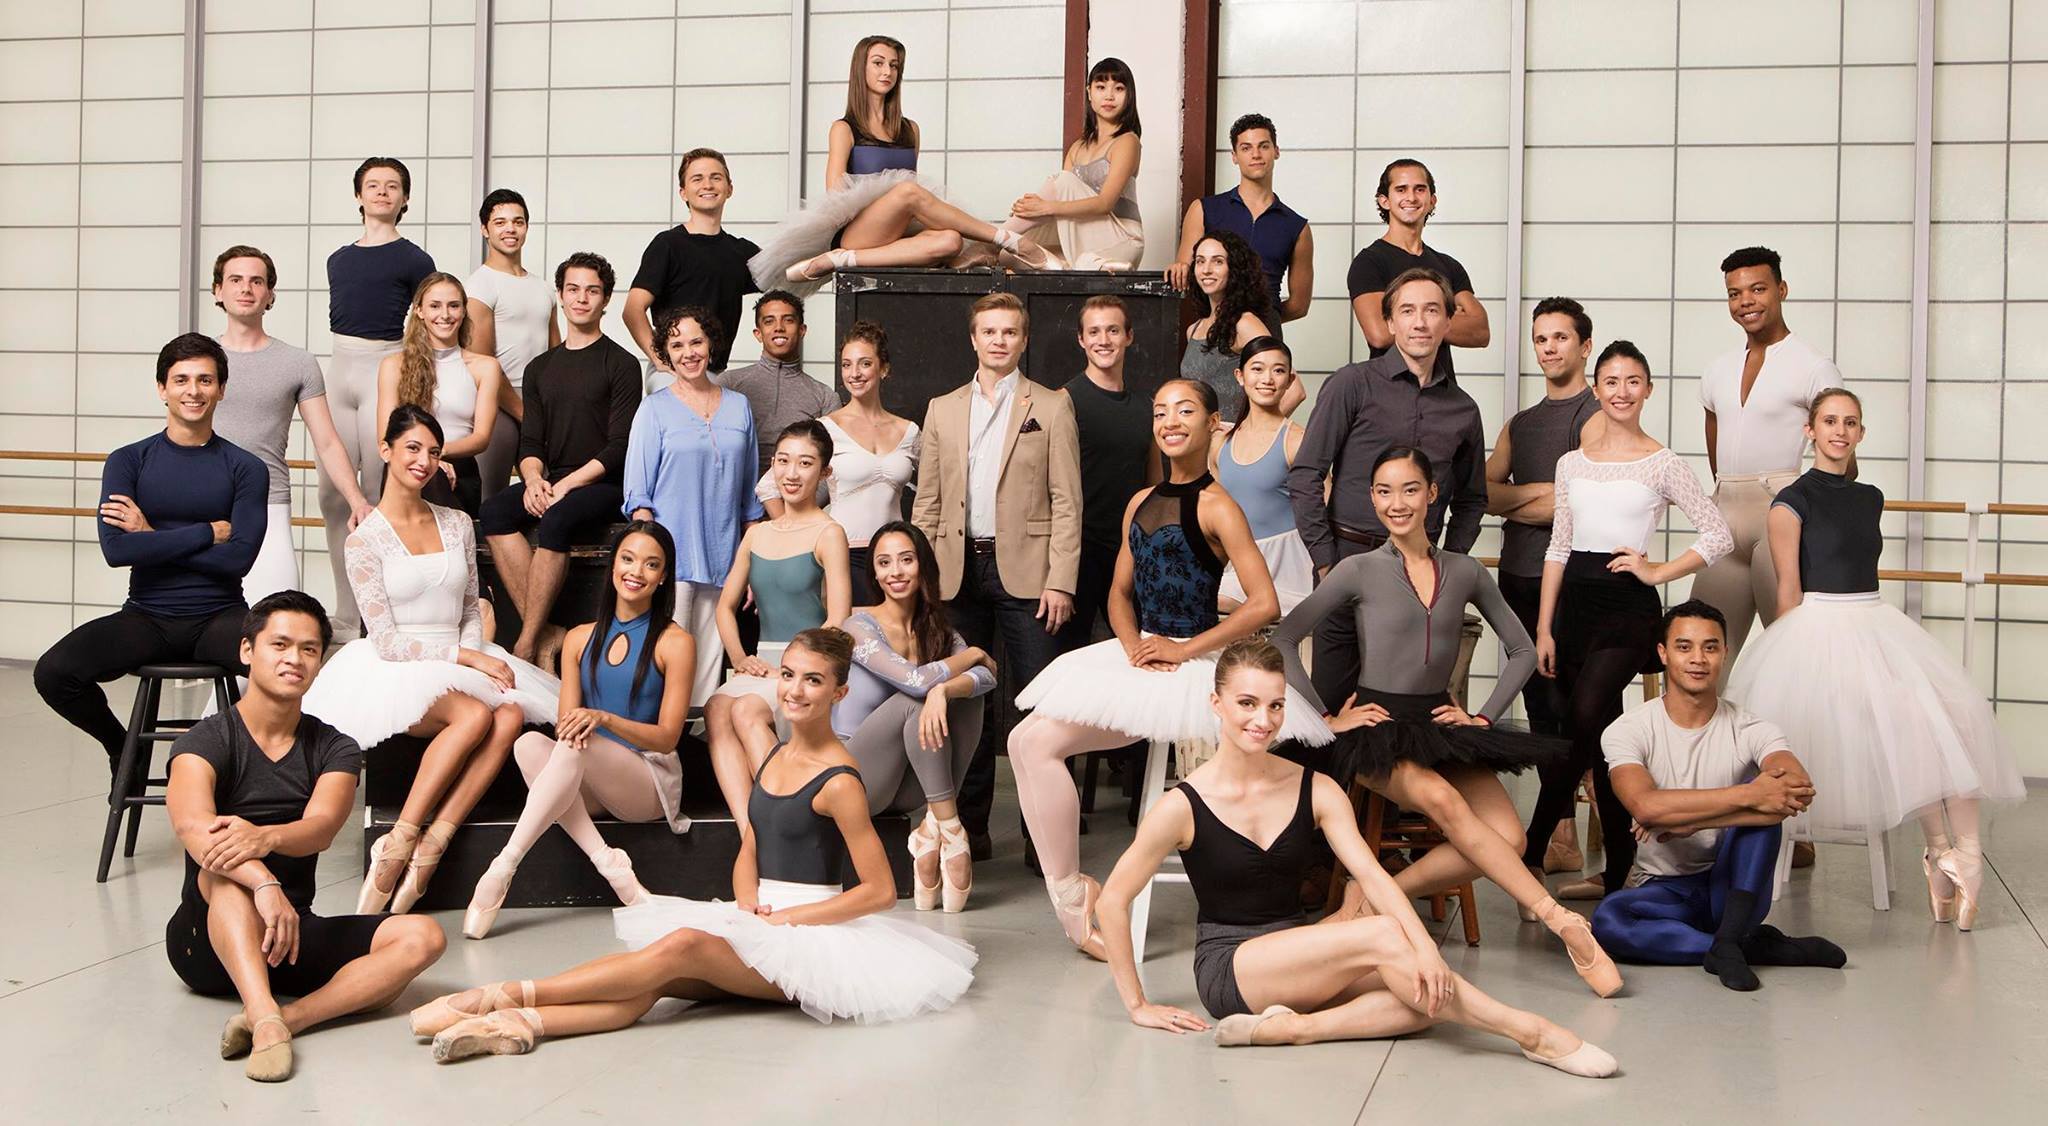 Atlanta Ballet  Atlanta Ballet Announces 2017-18 Company Roster